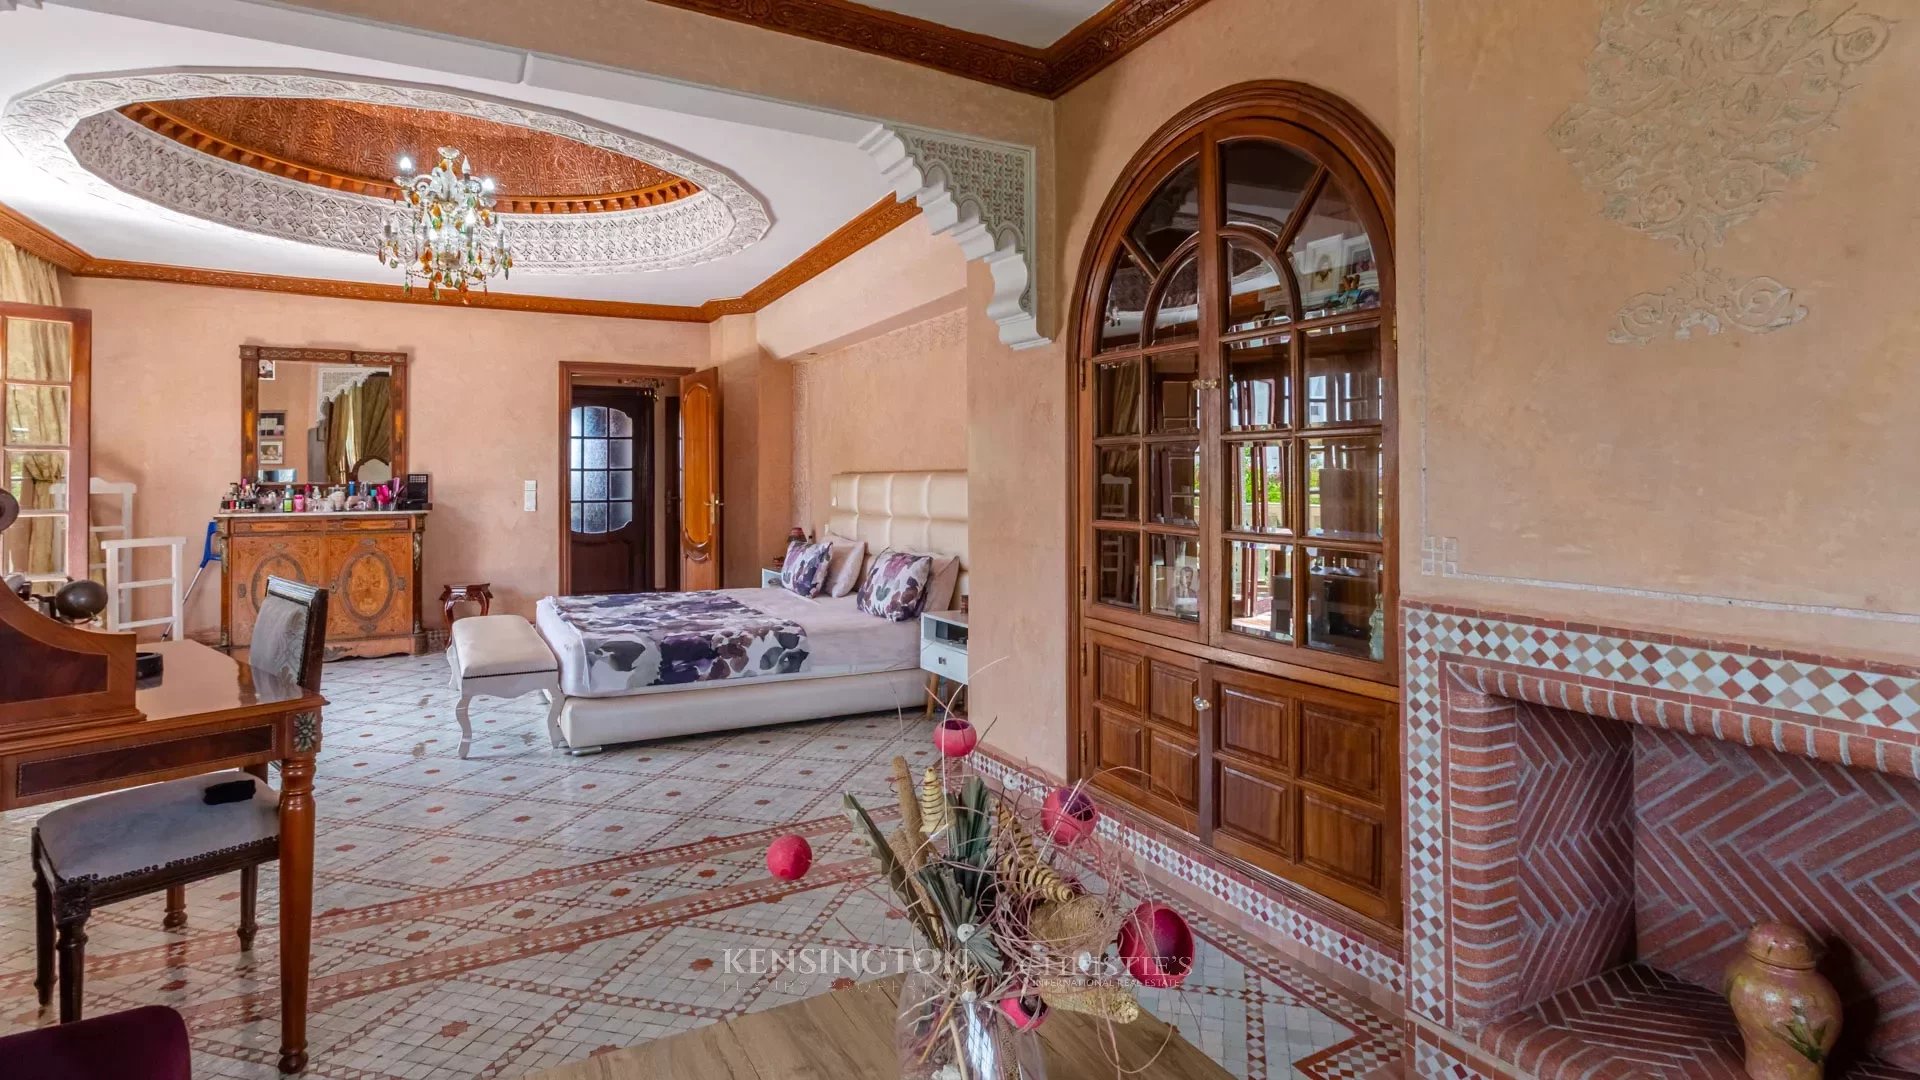 Villa Rialto in Casablanca, Morocco